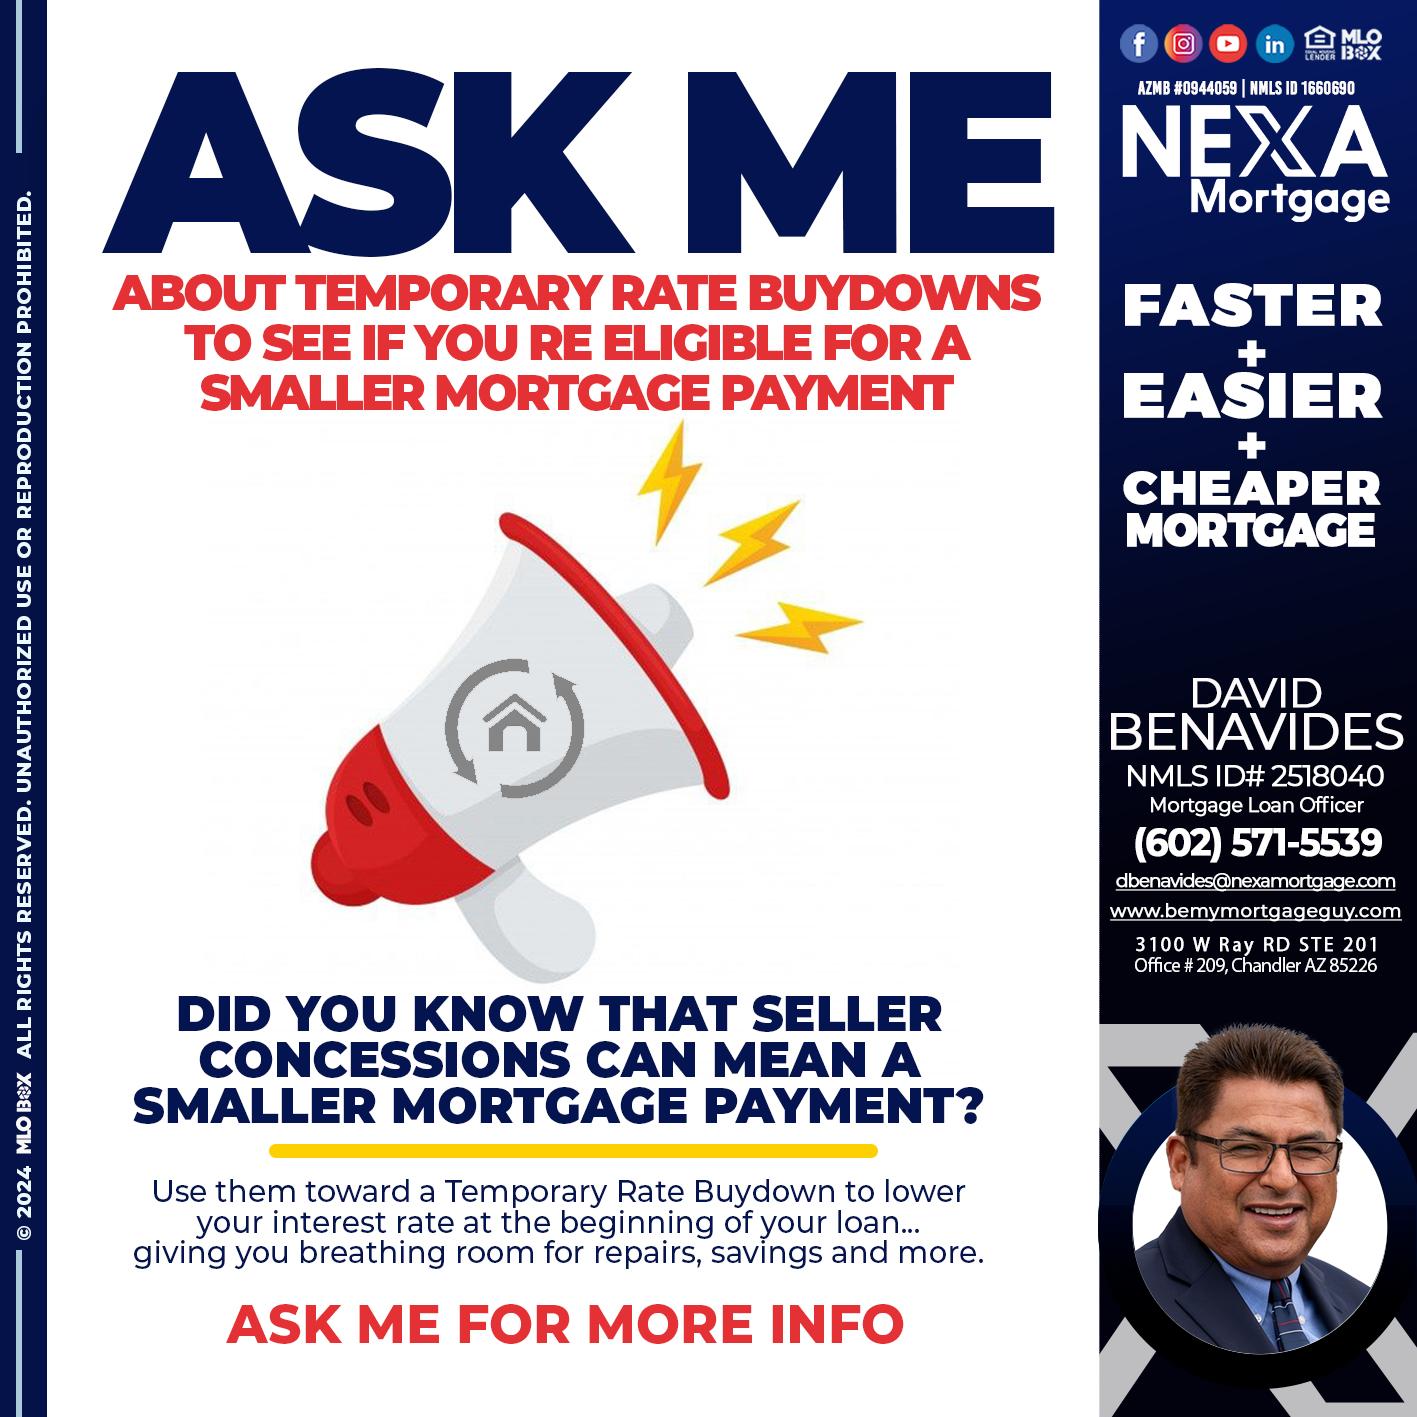 ask me - David Benavides -Mortgage Loan Officer